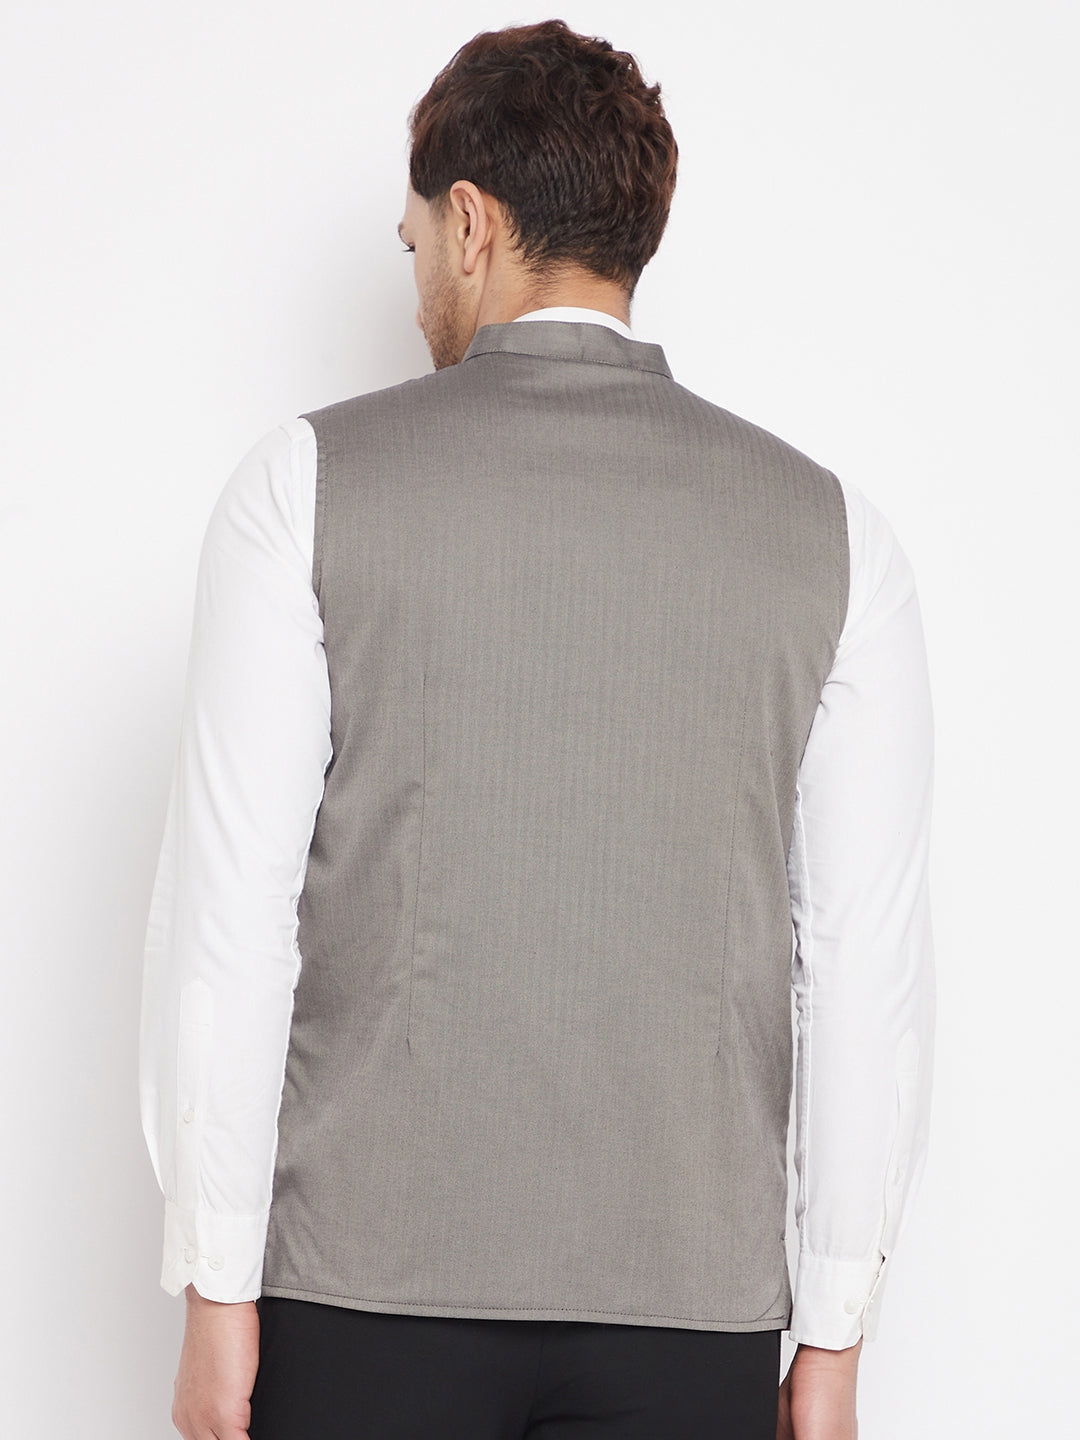 Men's Grey Color Nehru Jacket-Contrast Lining-Inbuilt Pocket Square - Even Apparels